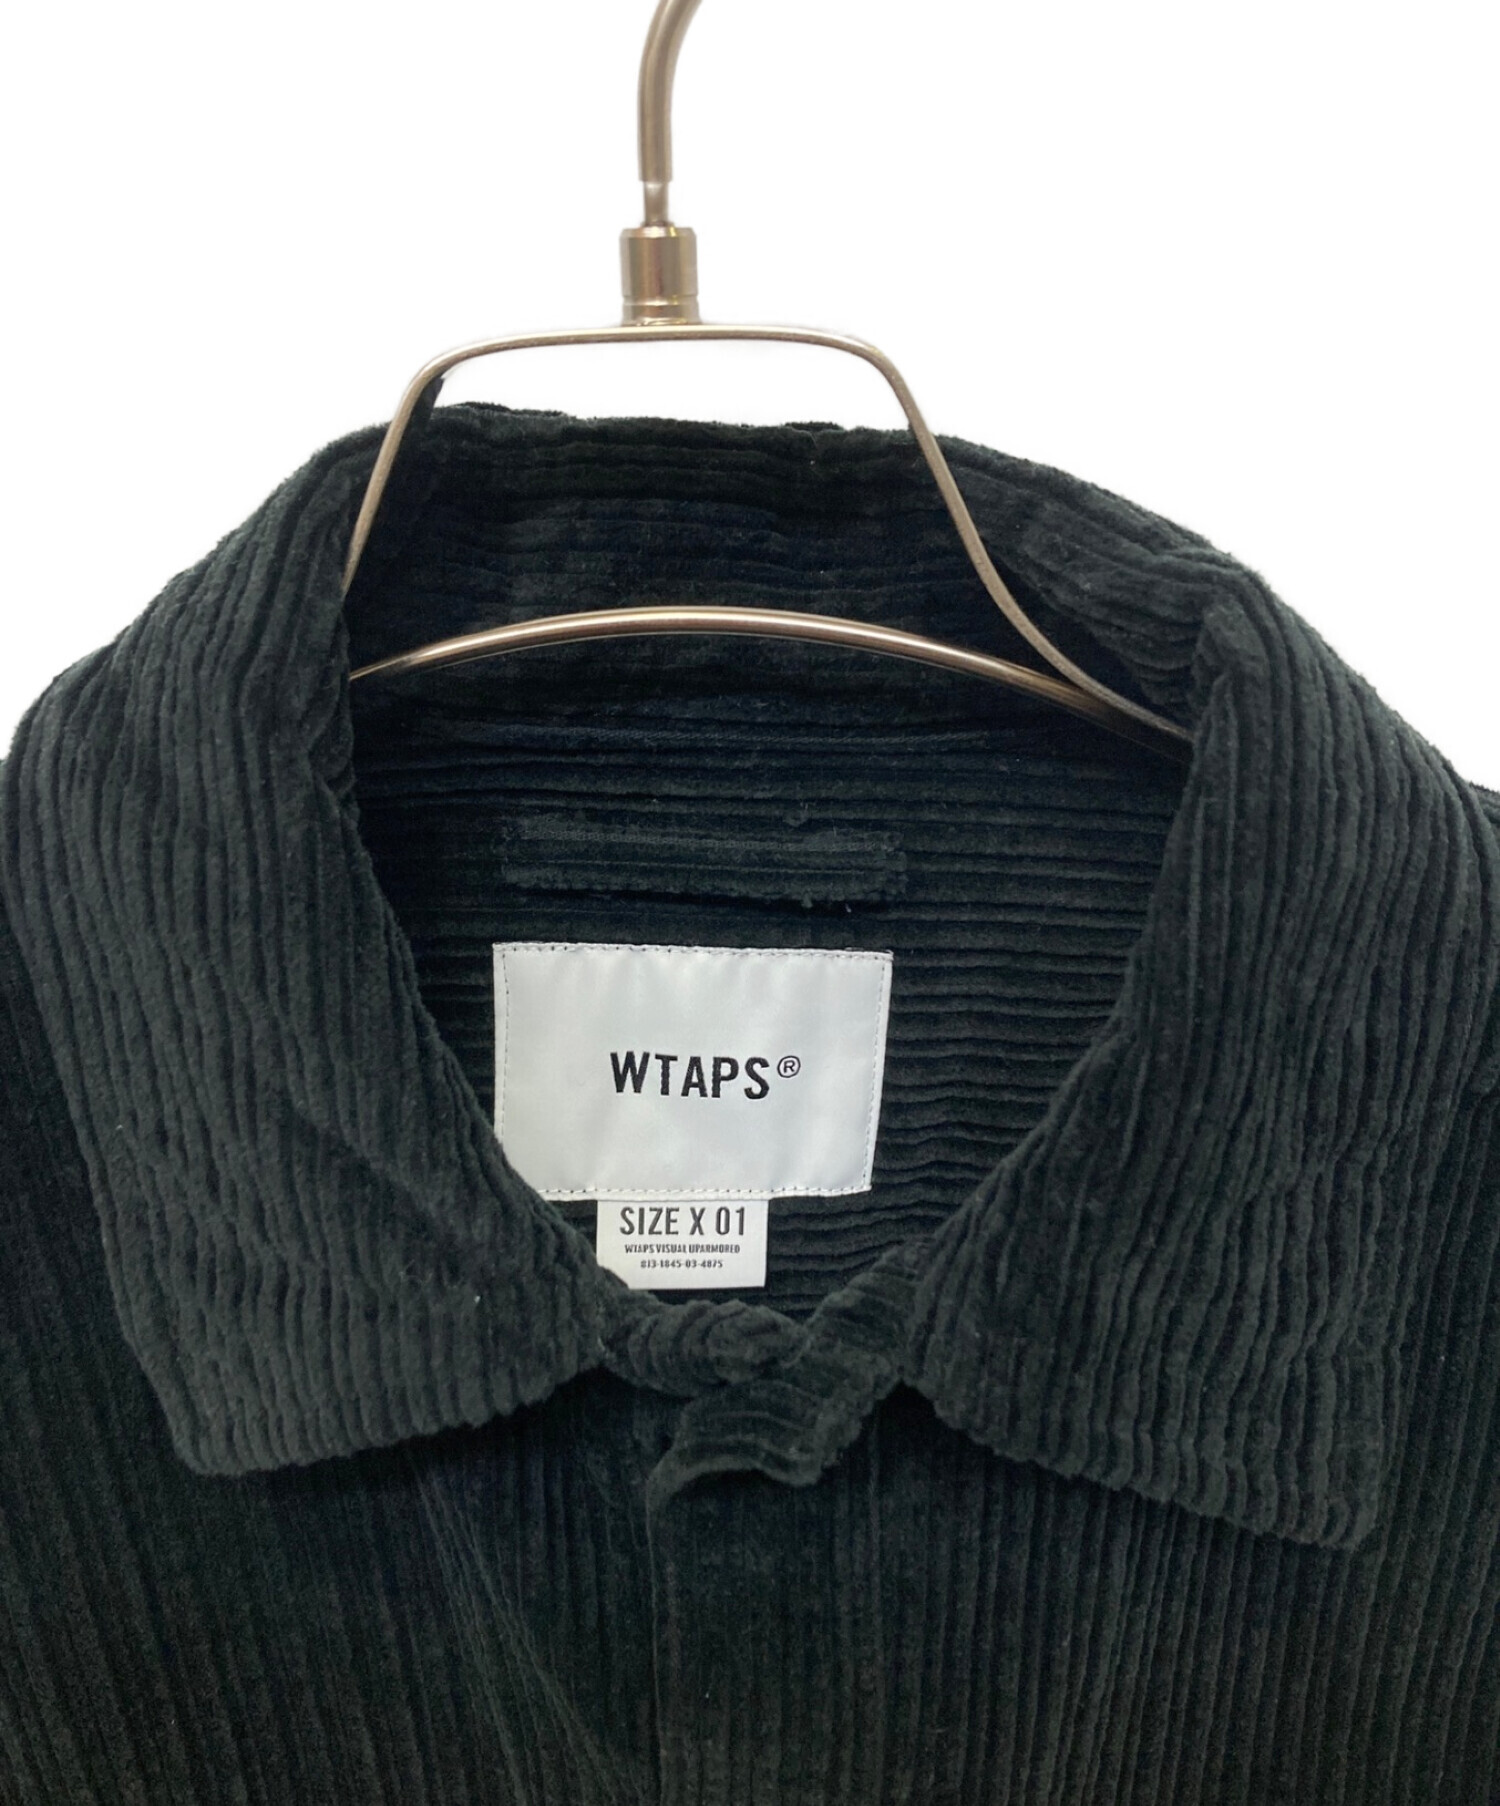 WTAPS (ダブルタップス) コーデュロイシャツ ブラック サイズ:X01